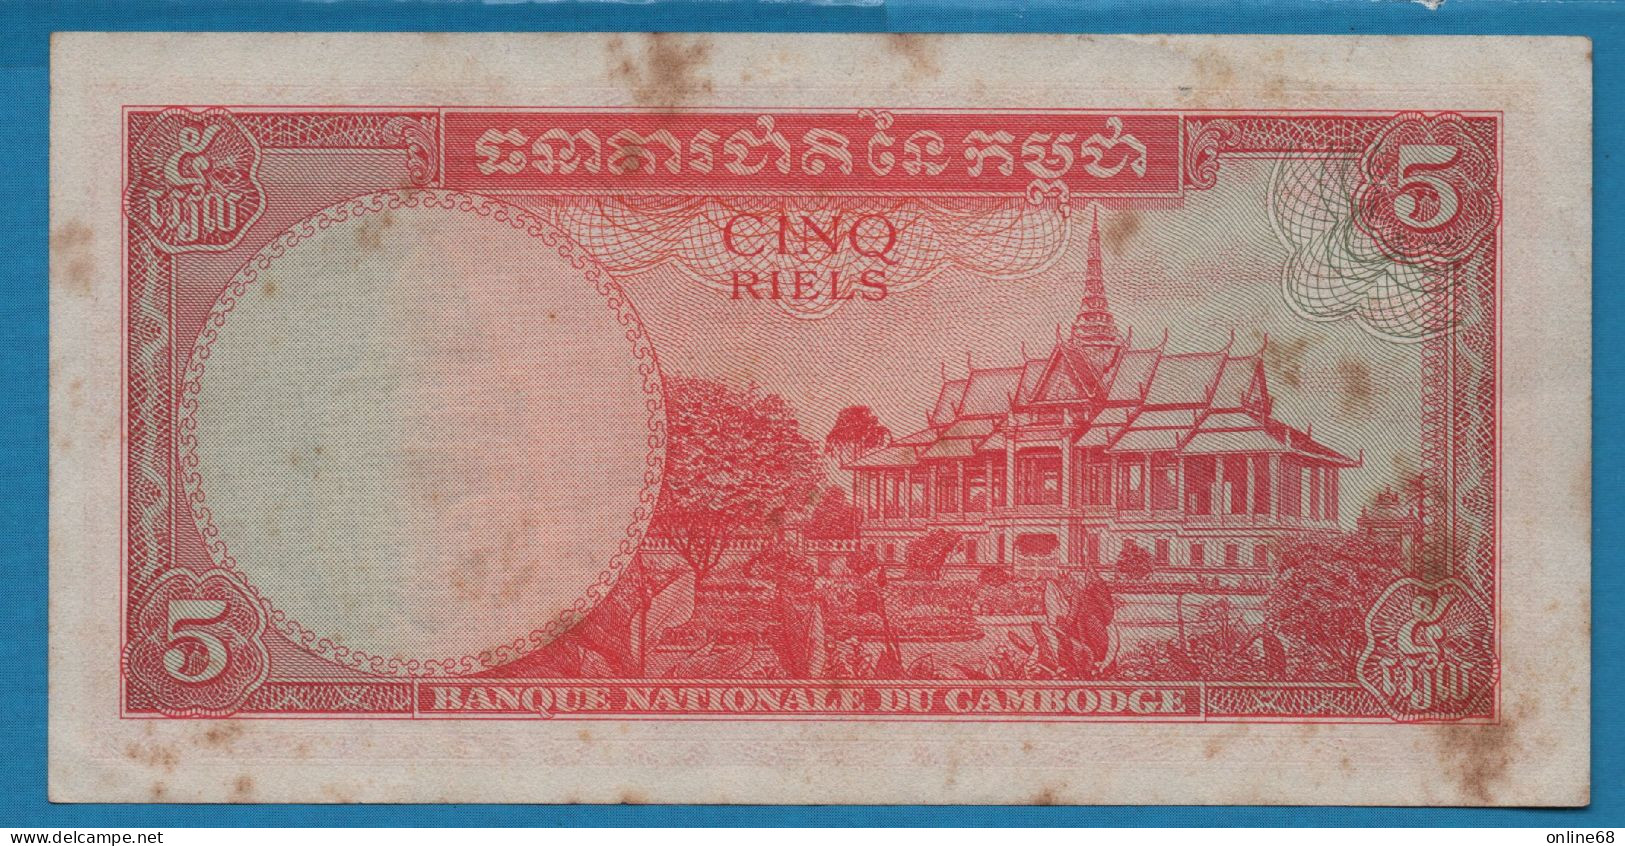 CAMBODIA 5 RIELS ND (1962-1975) # ង៣ 201424 P# 10c Bayon Temple - Cambodia